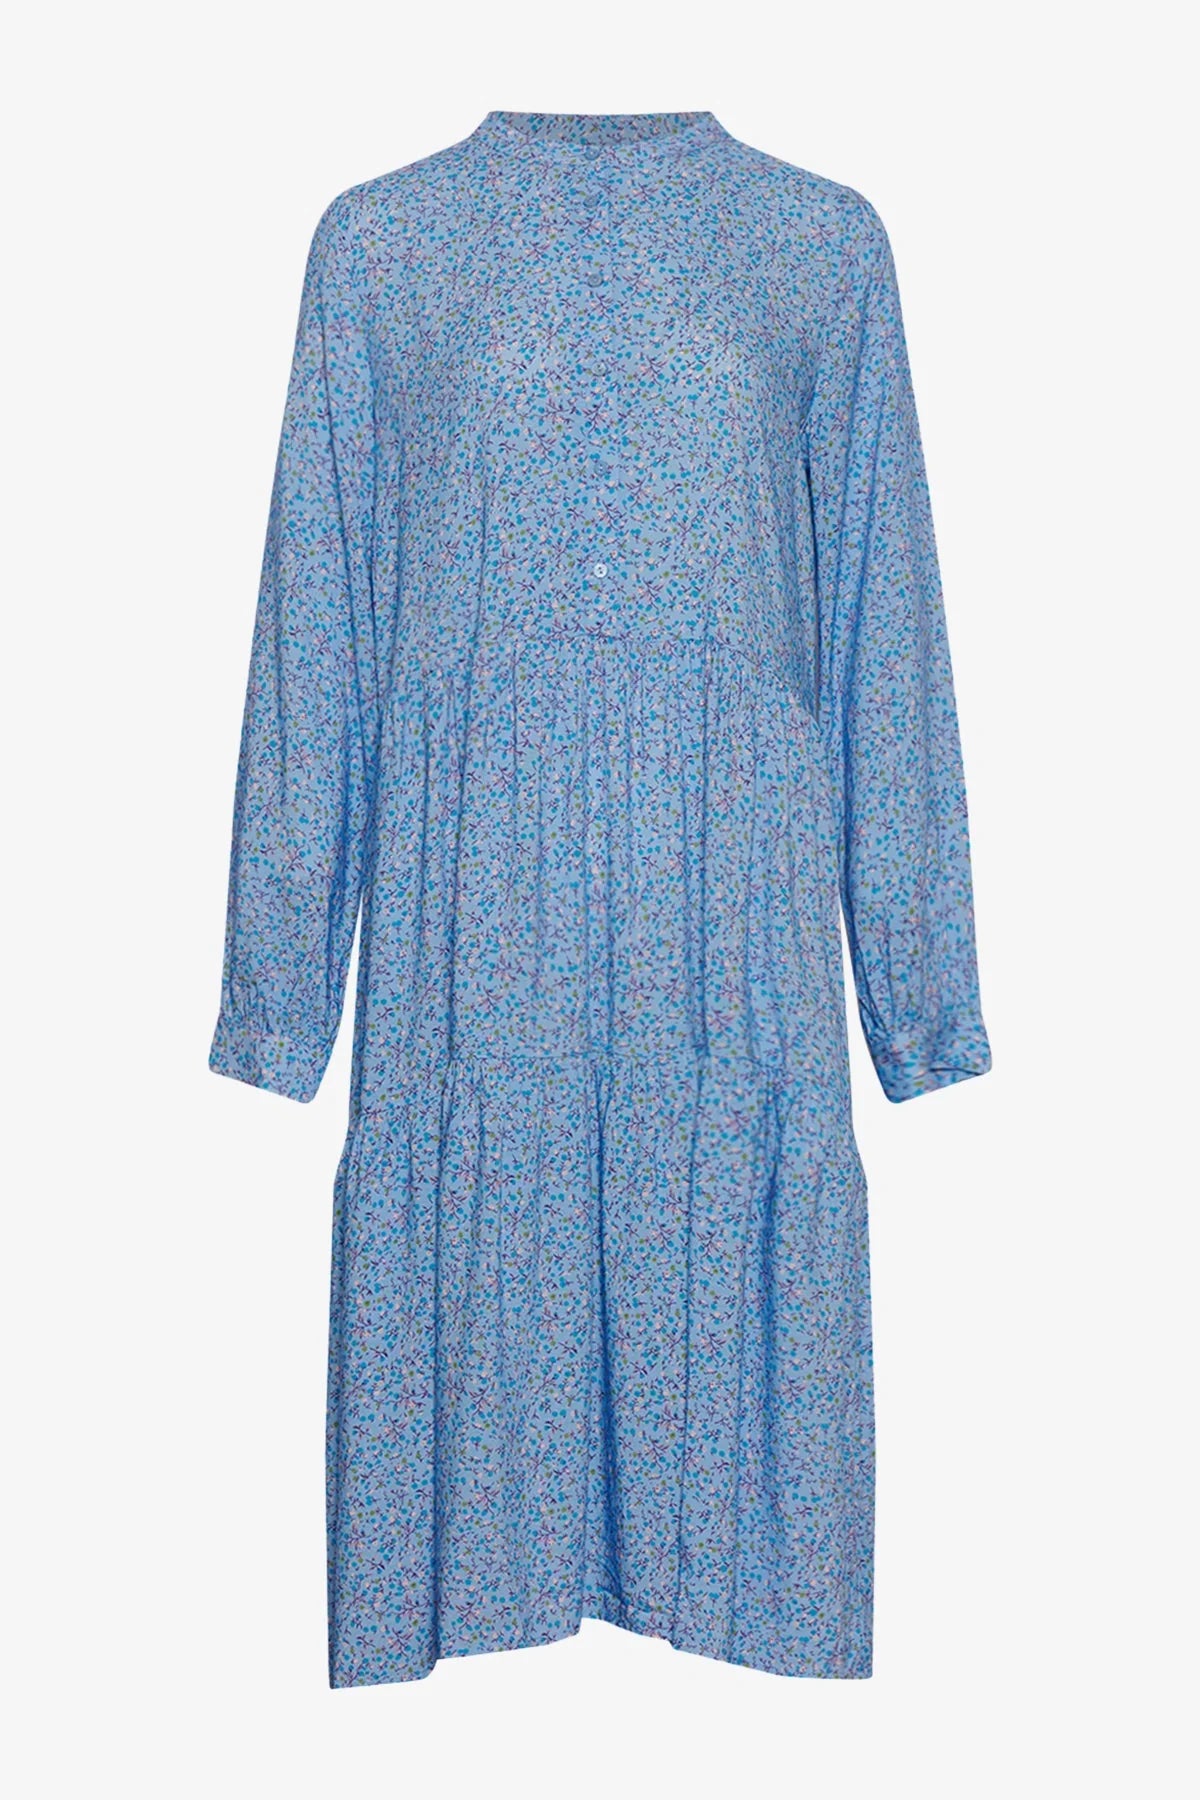 Noella Lipe Dress Blue Flower - hvittrad.no